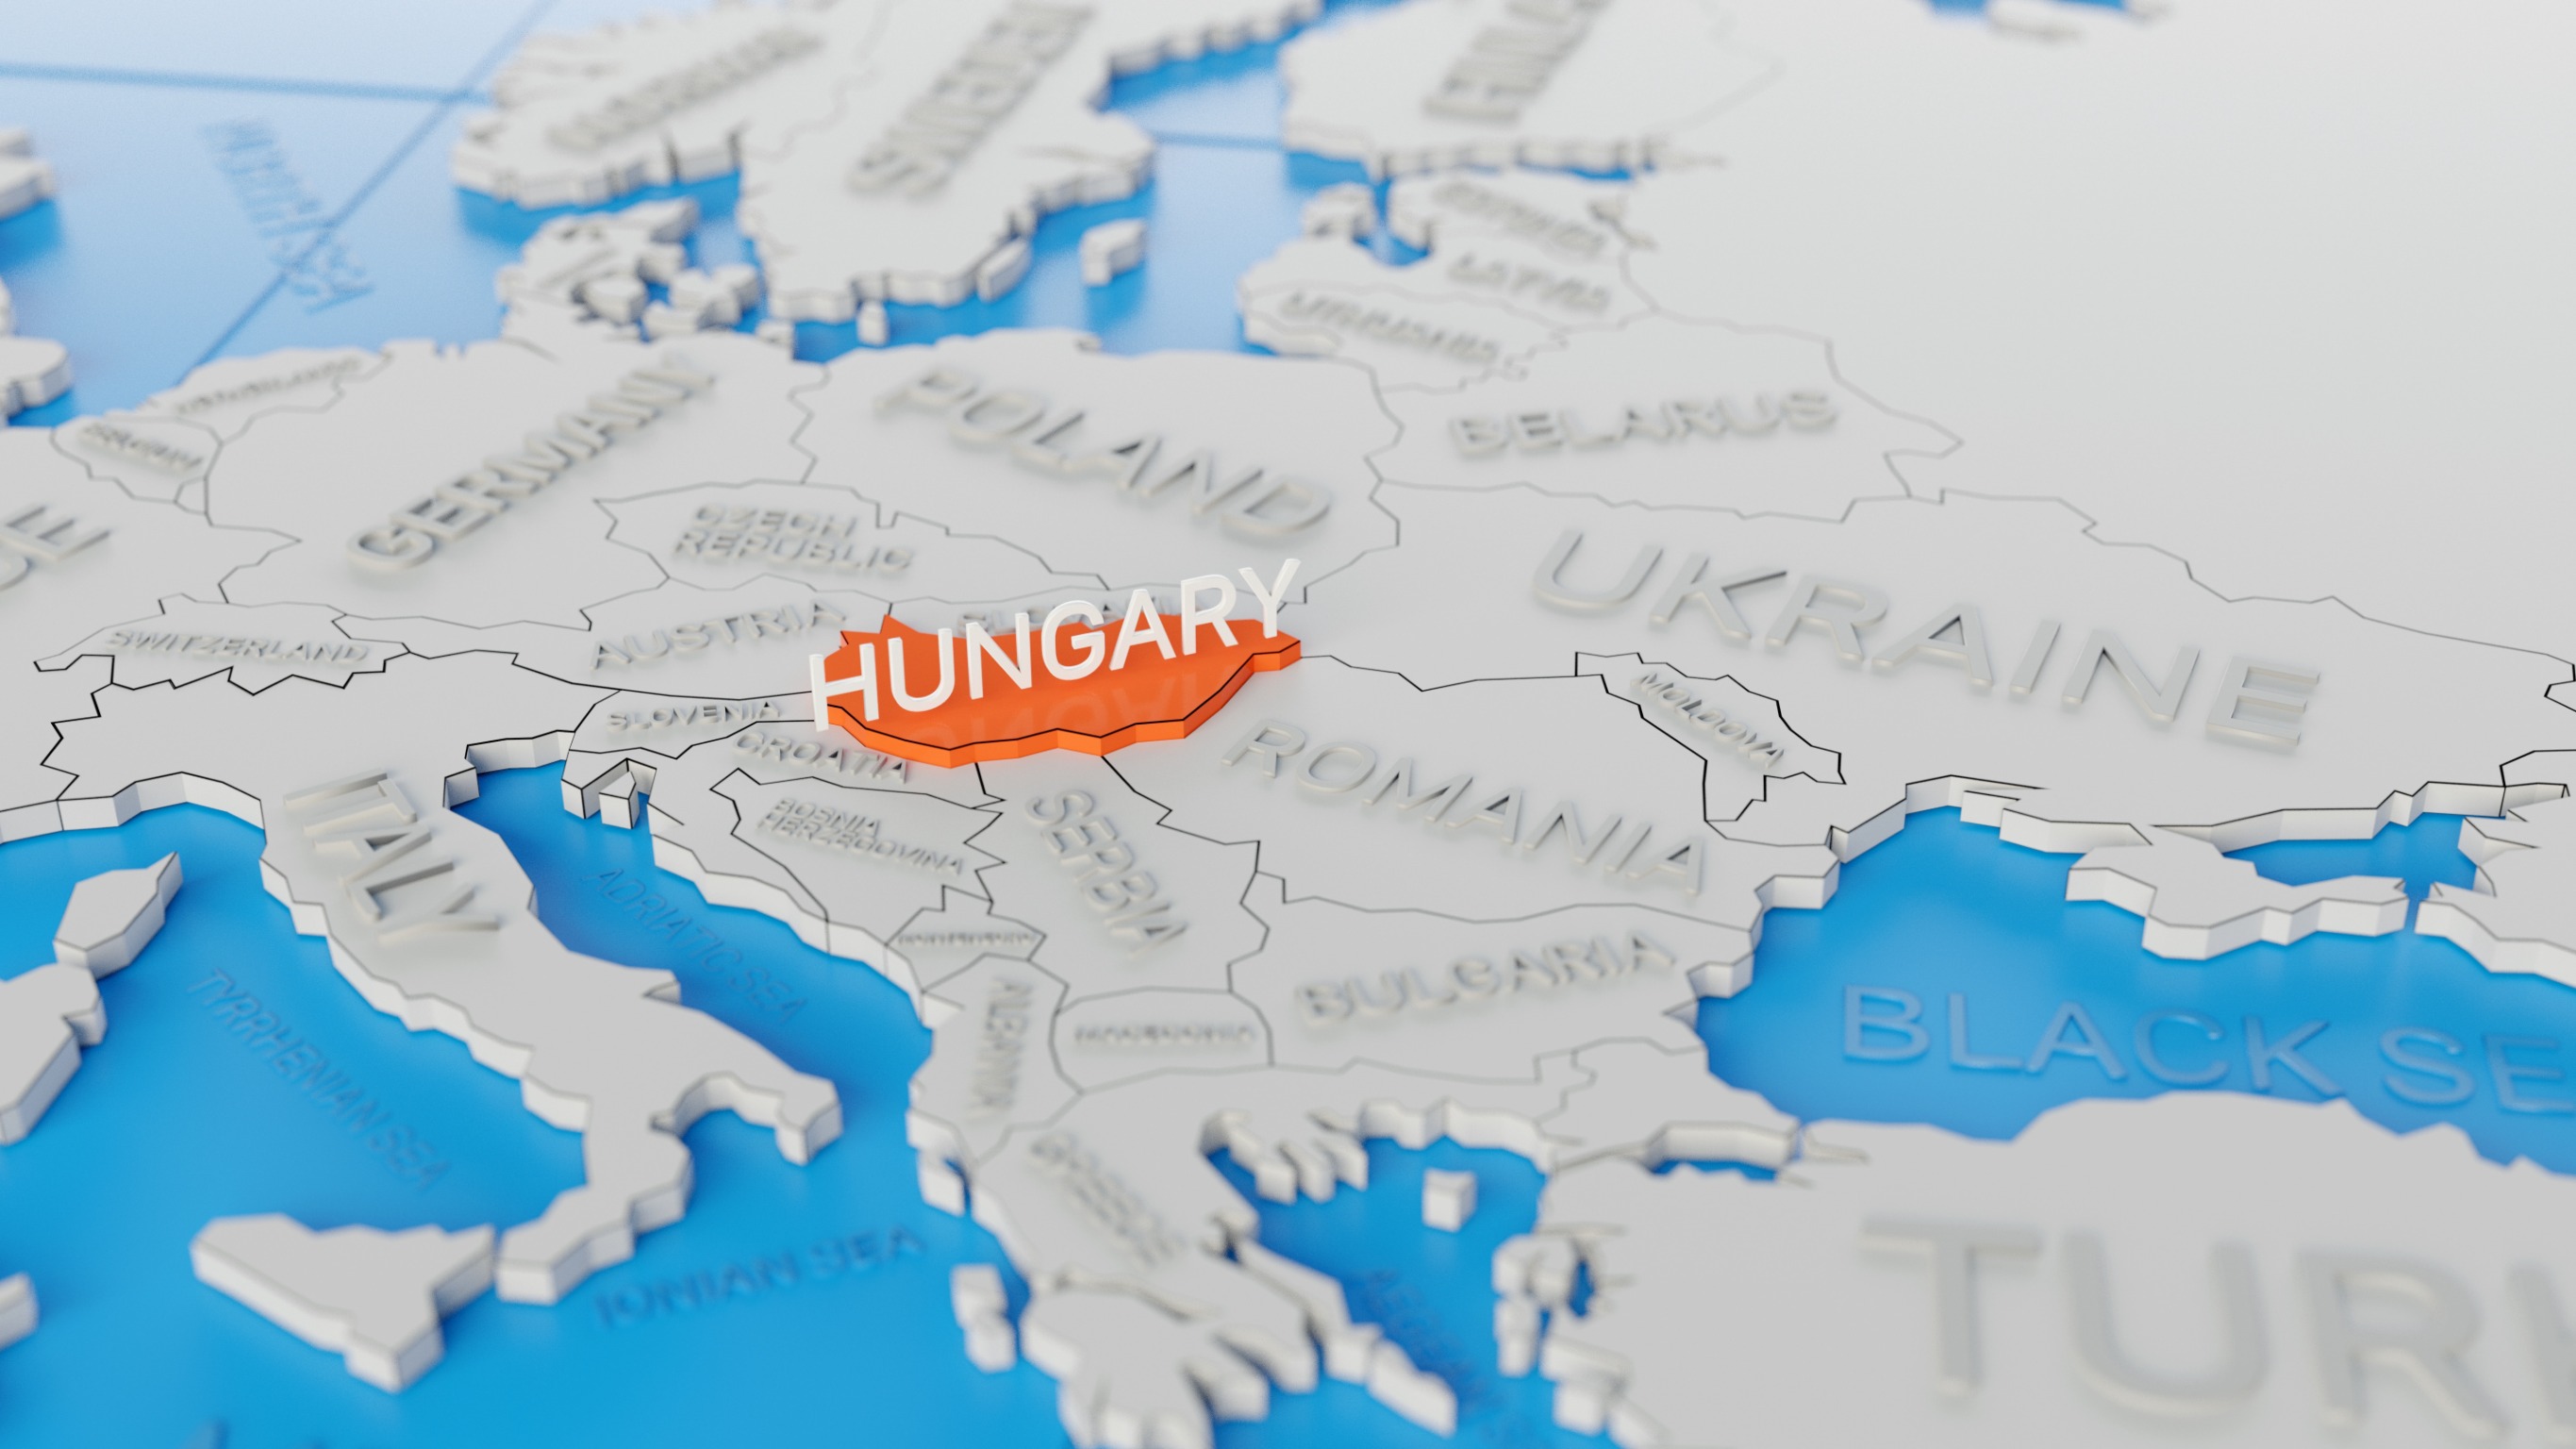 Hungary joins the European Suzuki Community!